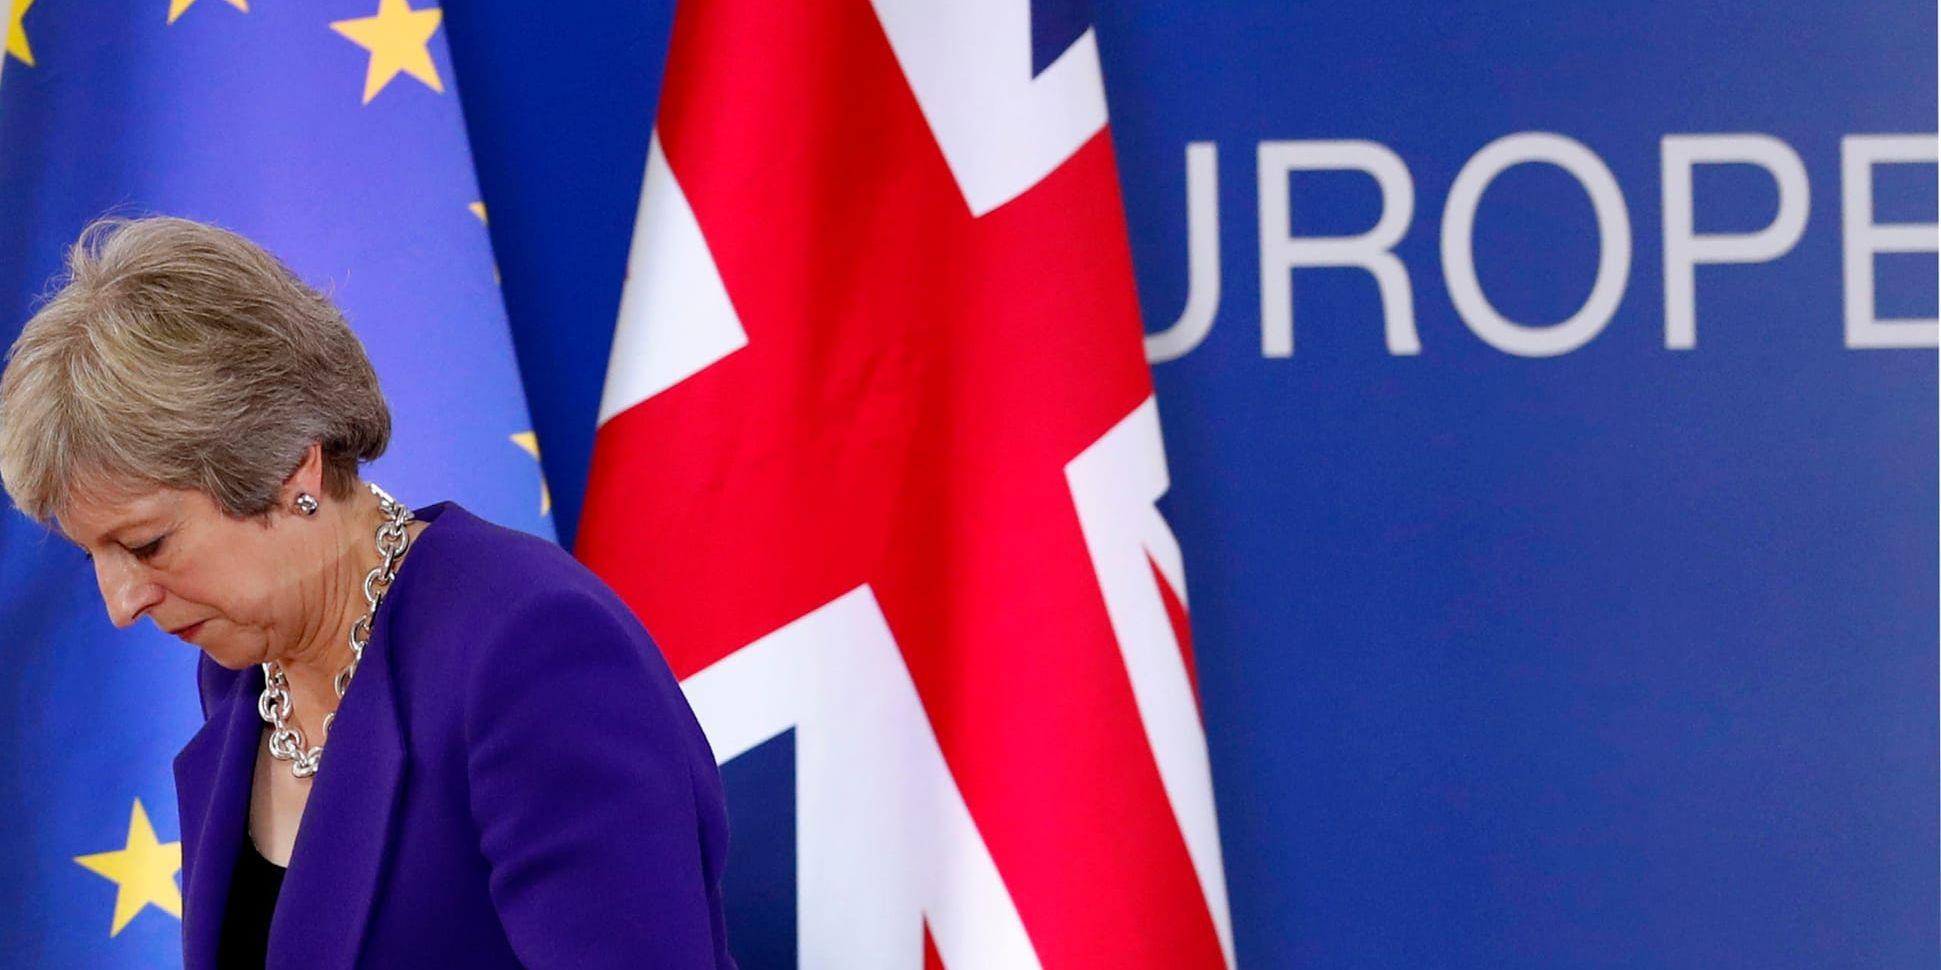 Storbritanniens premiärminister Theresa May tänker leda landet ut ur EU den 29 mars 2019. Frågan är bara om hon hinner få till ett utträdesavtal före det.